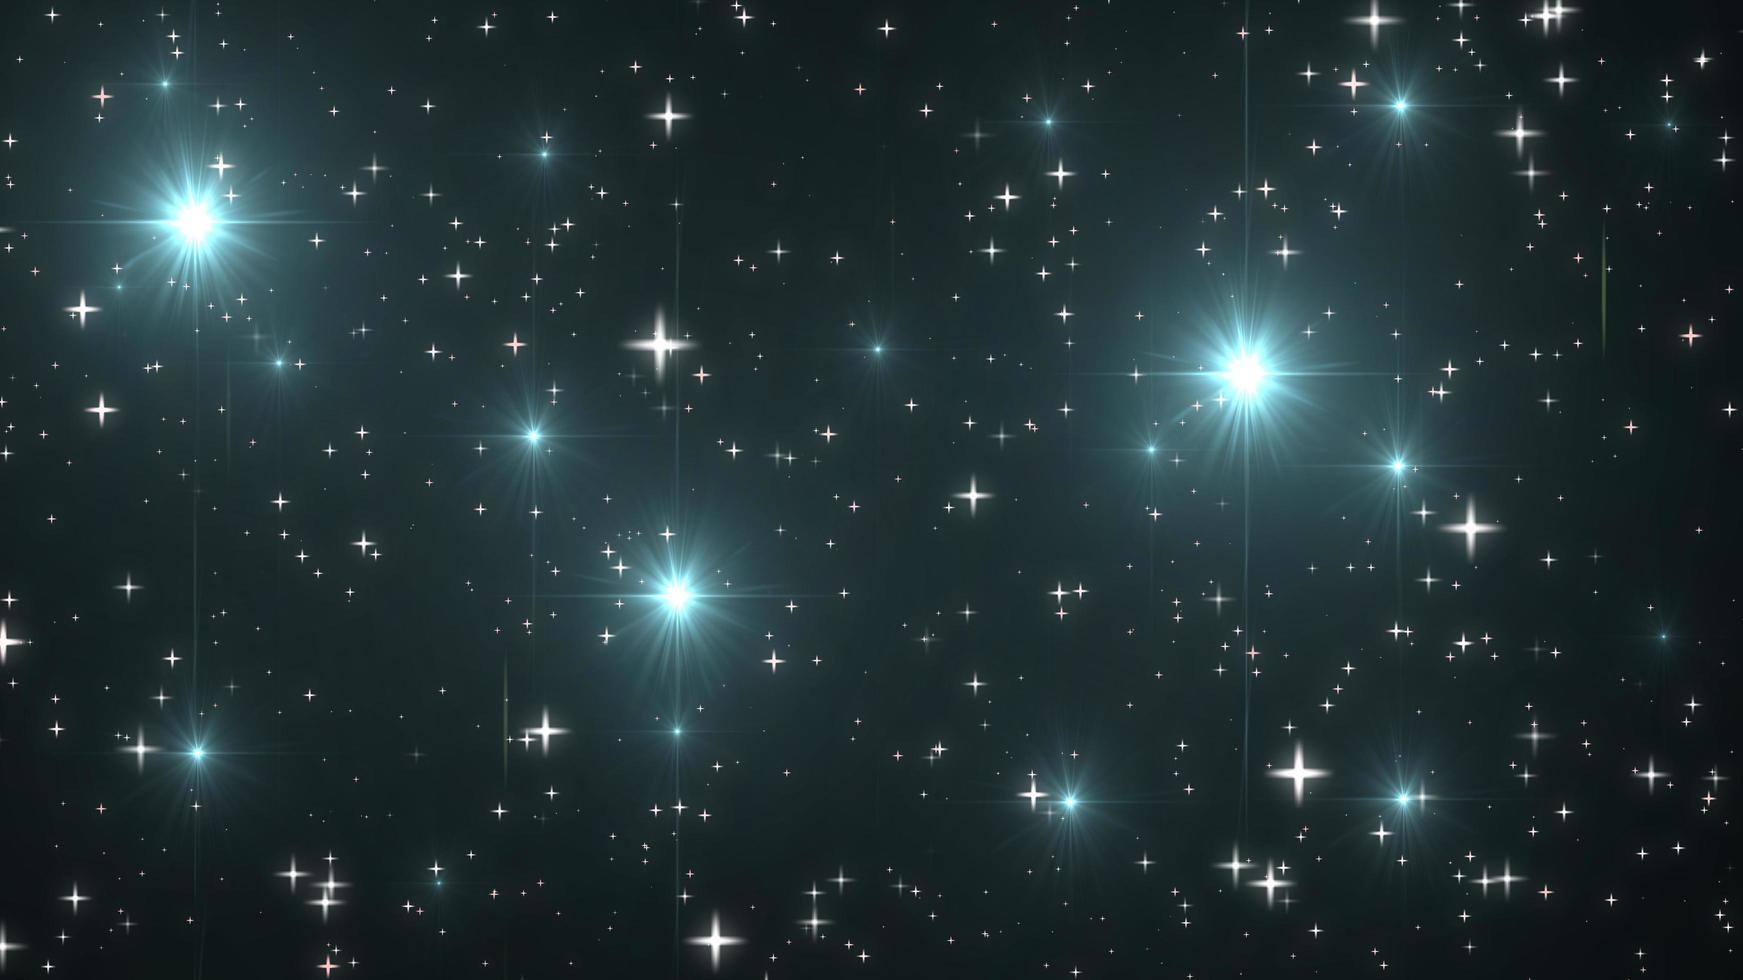 Nachthimmel mit funkelnden Sternen auf schwarzem Hintergrund foto